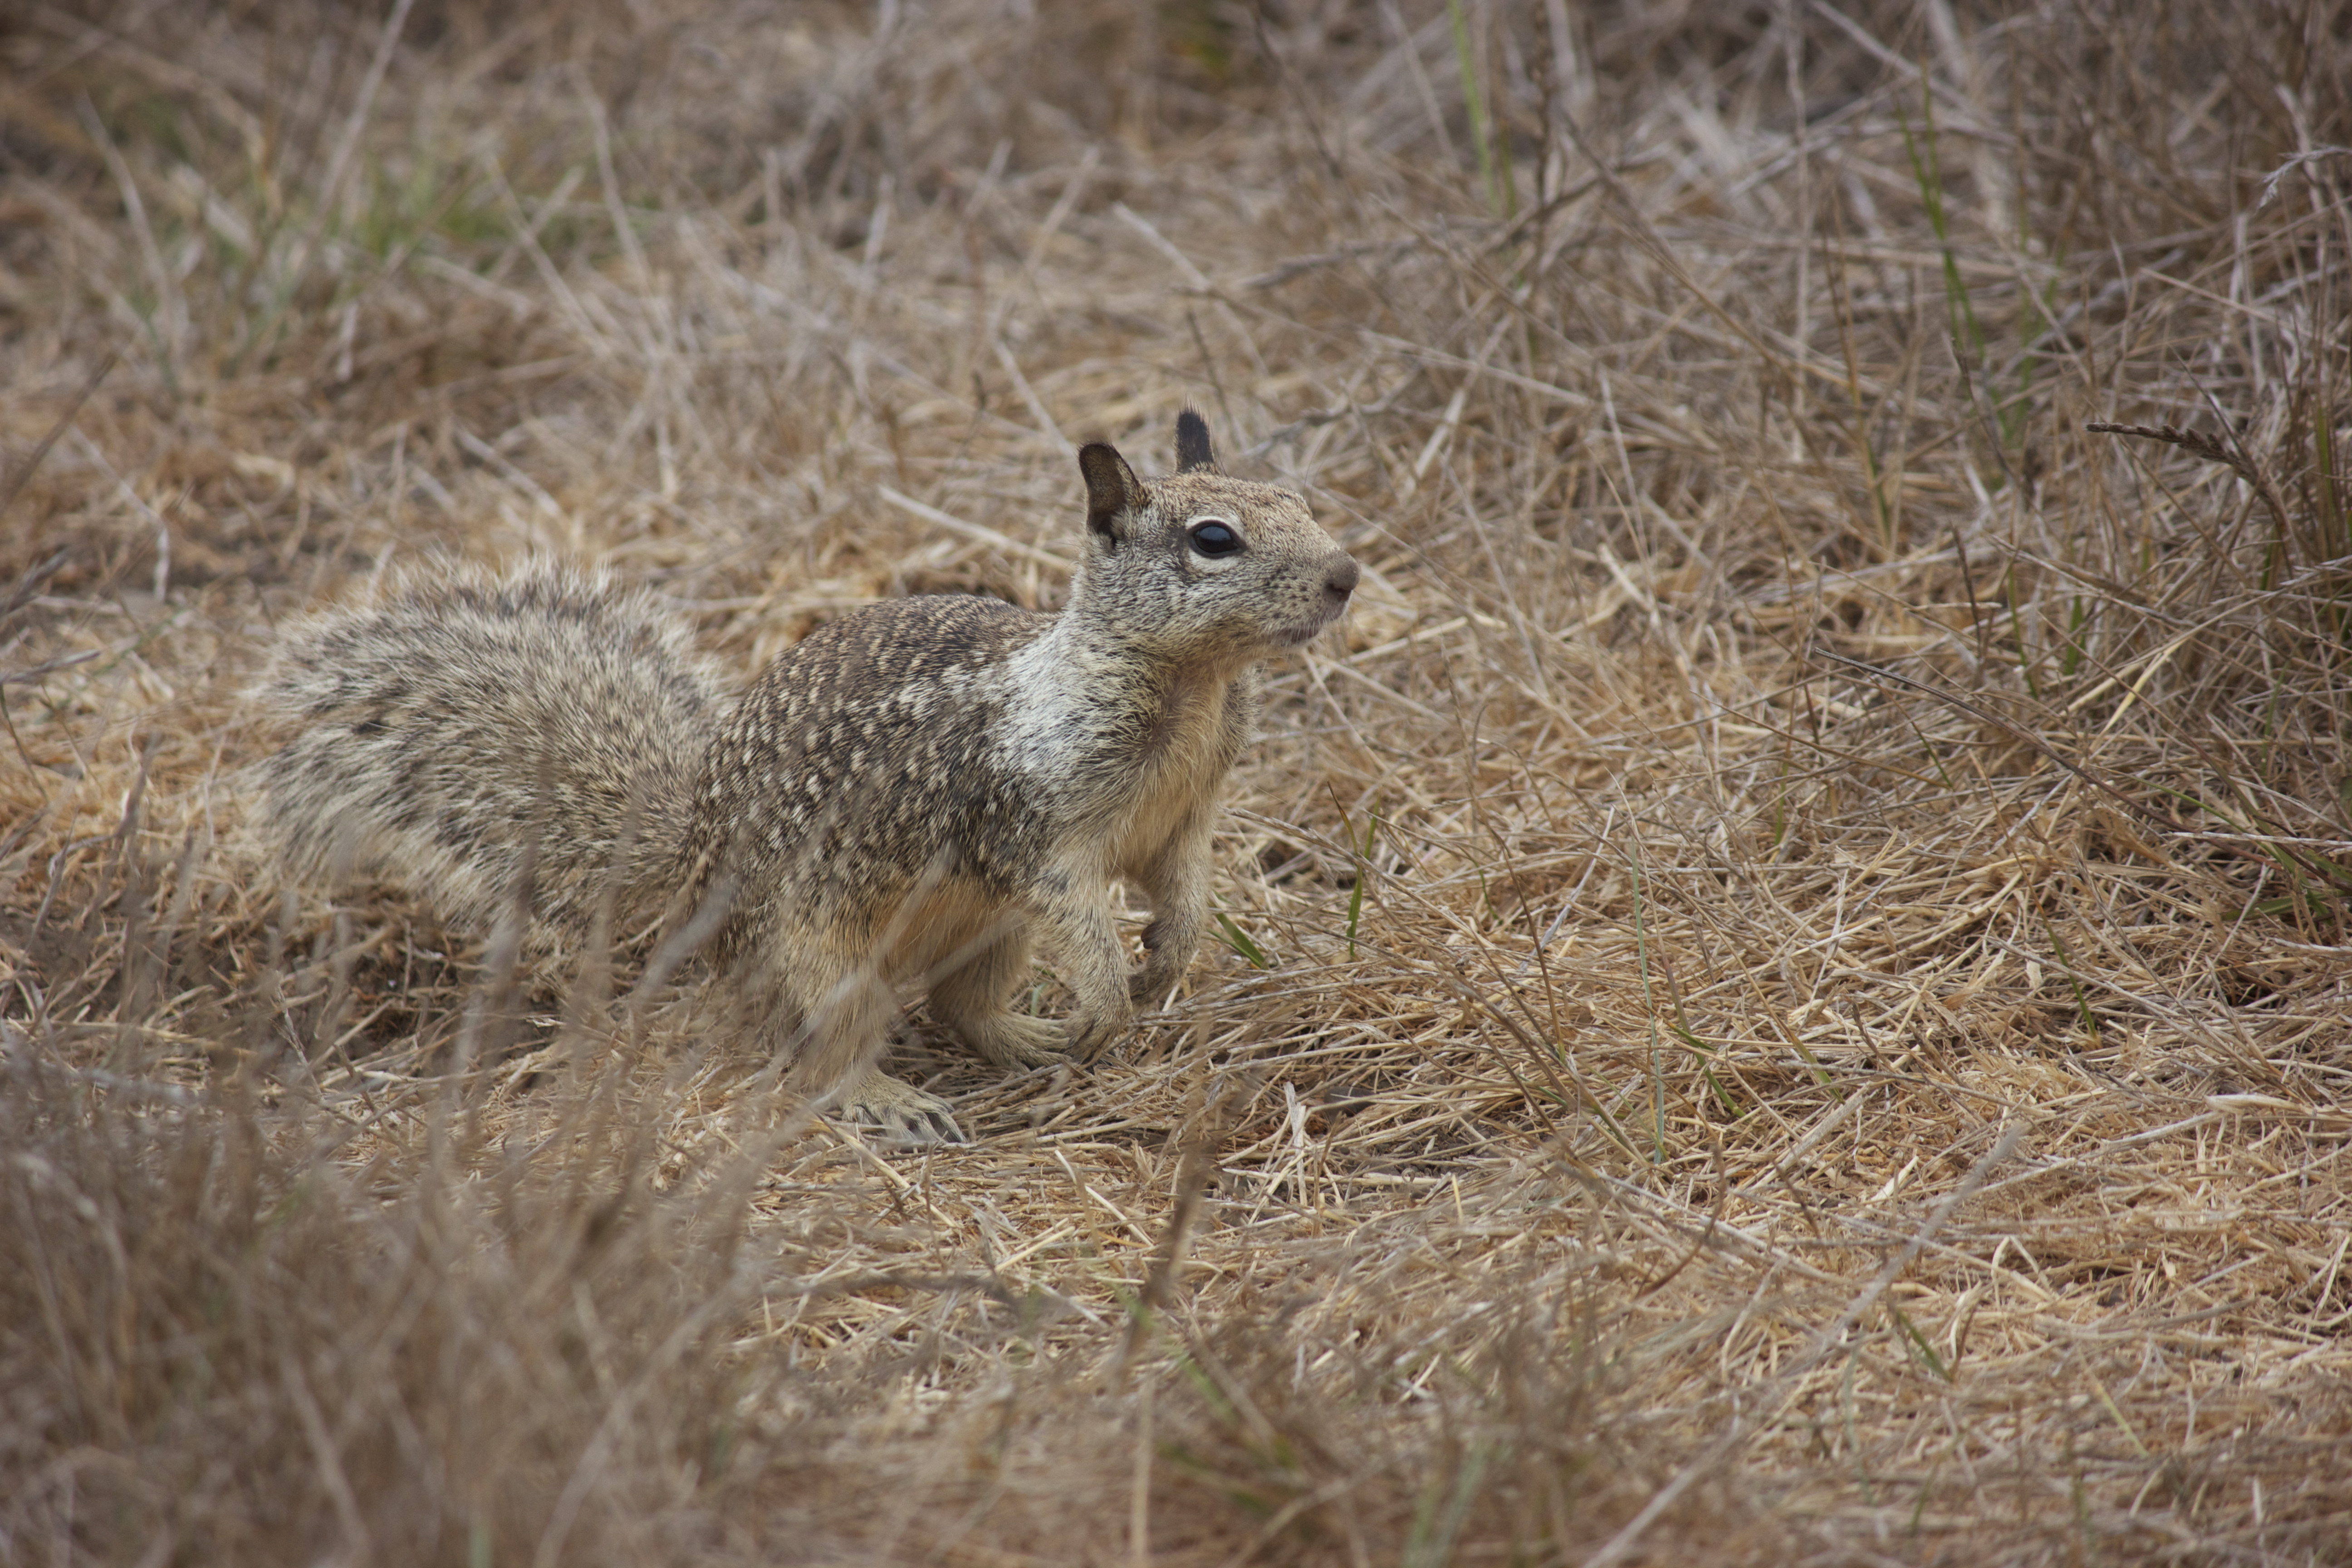 Ground squirrel, alert in the scrub brush.